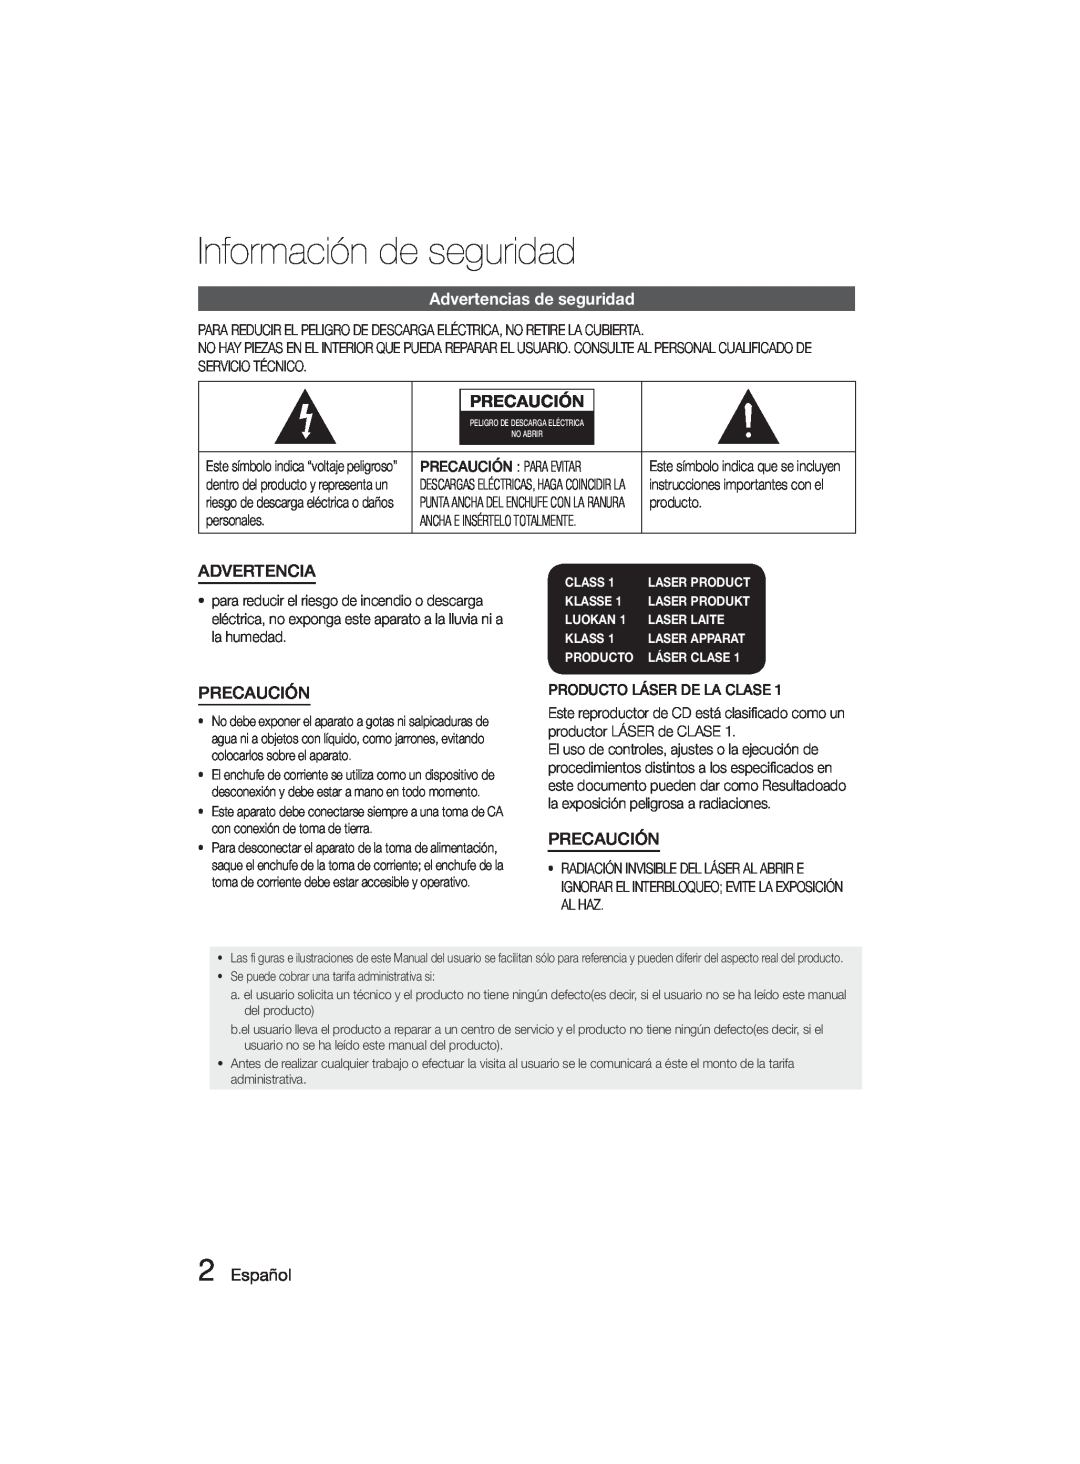 Samsung MM-D330D/ZF manual Información de seguridad, Advertencias de seguridad, Precaución, Español, Class, Klasse, Luokan 